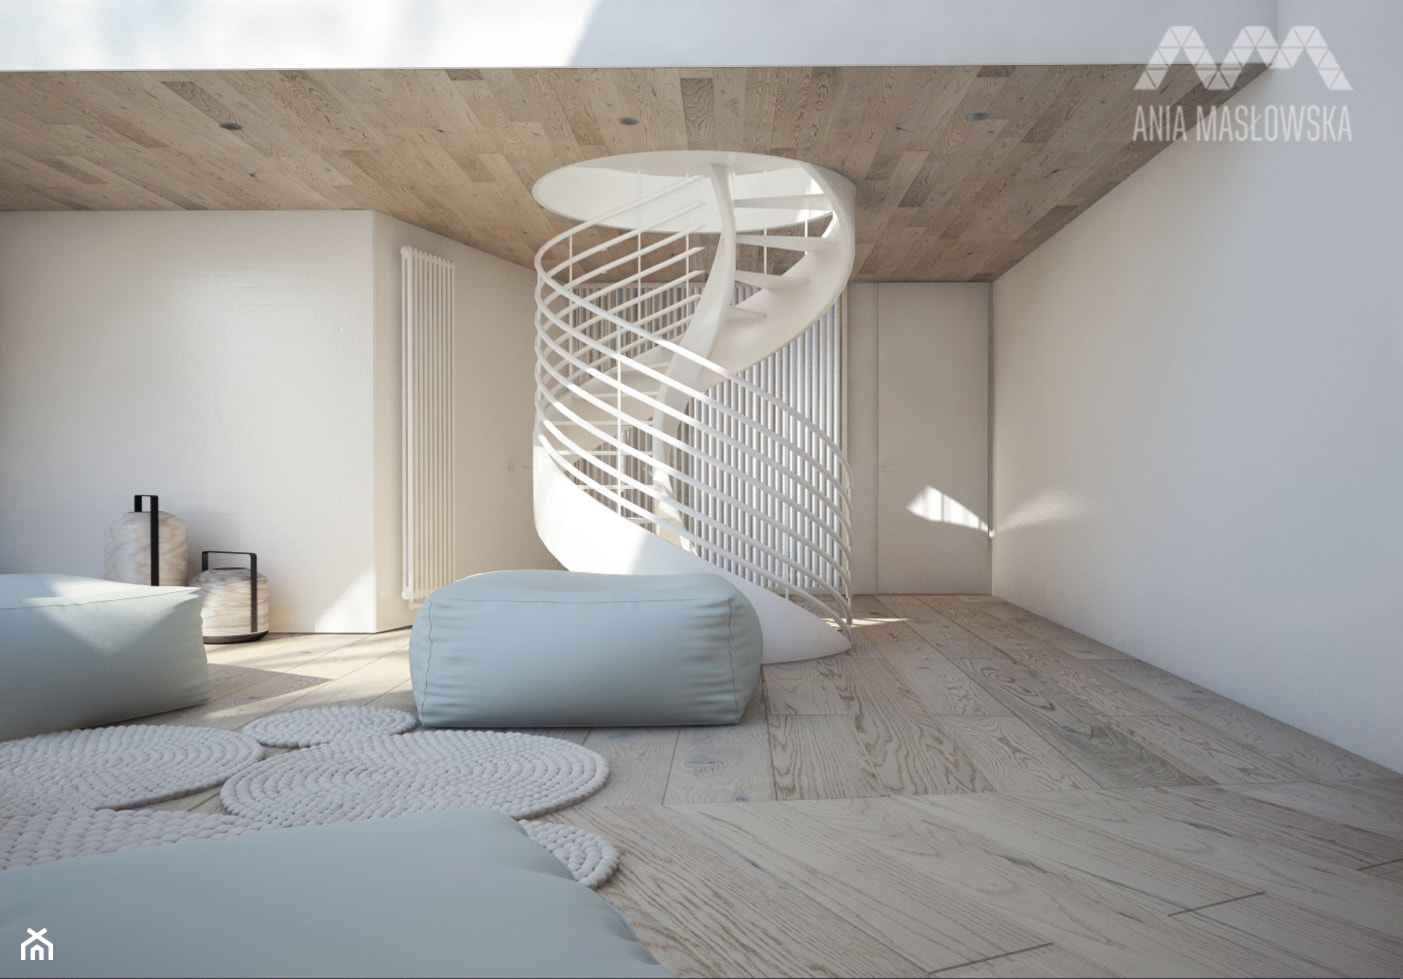 Projekt wnętrz domu pod Białymstokiem_wersja1 - Duży biały hol / przedpokój, styl skandynawski - zdjęcie od Ania Masłowska - Homebook